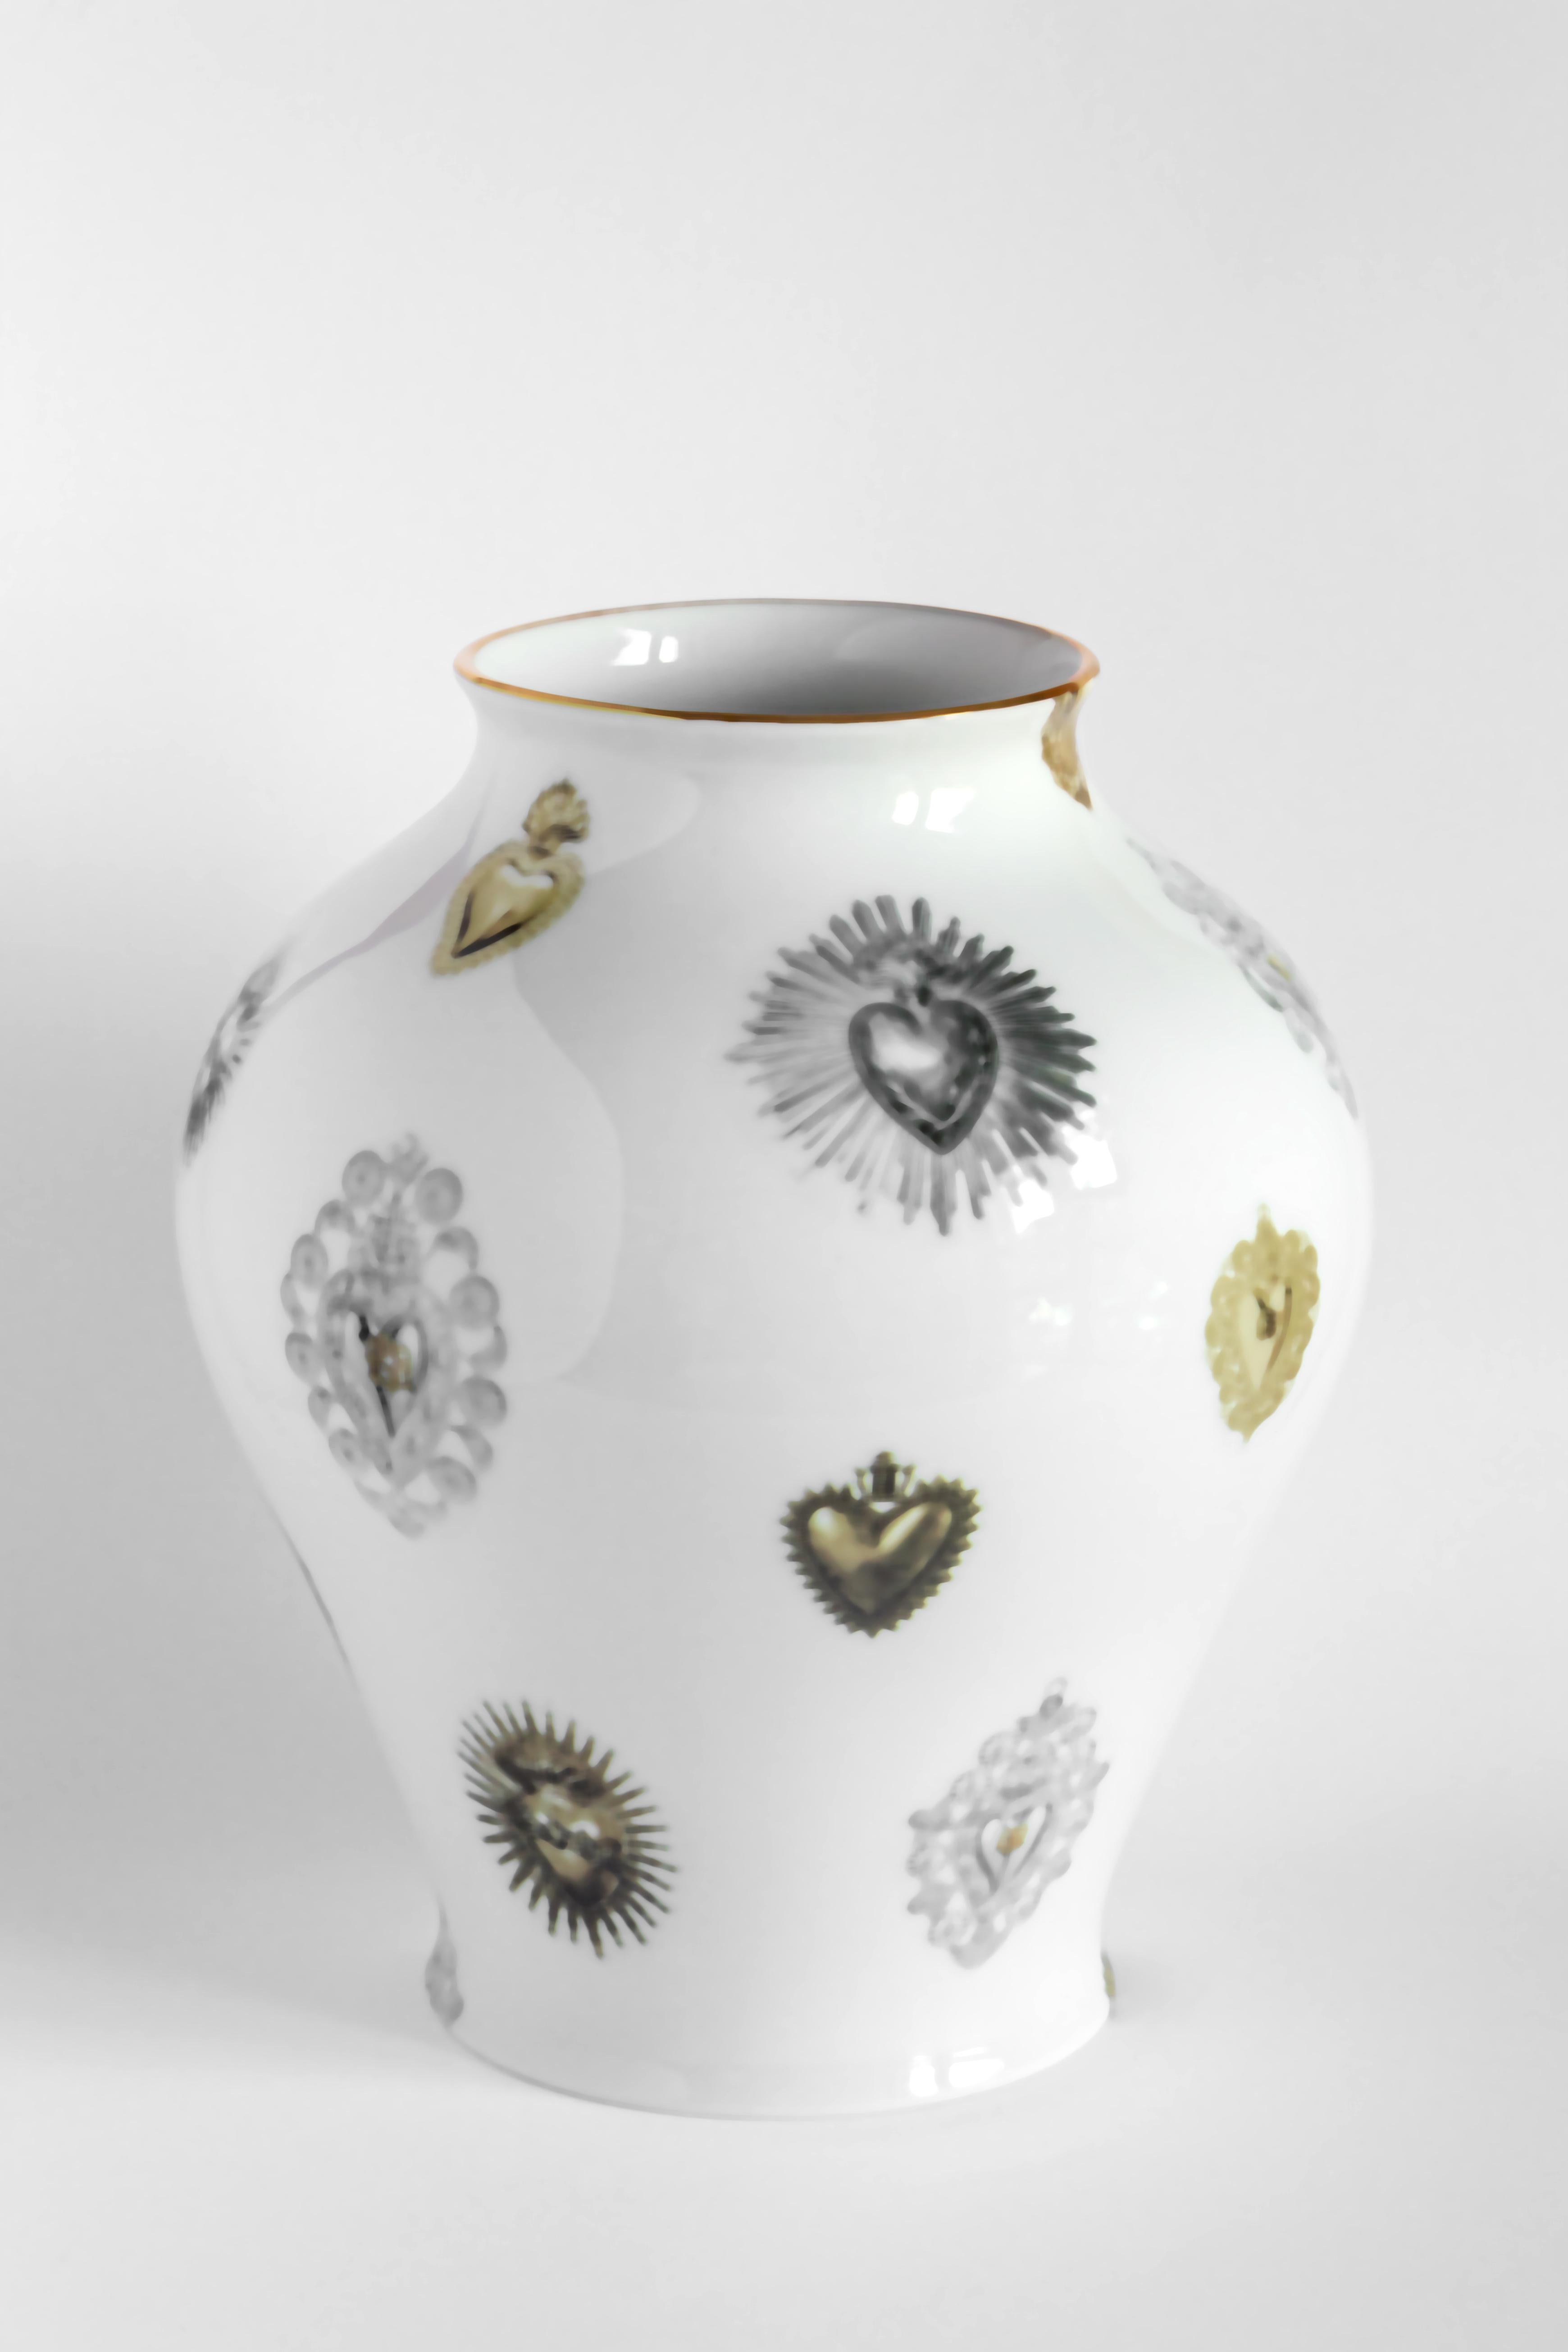 Das klassische Design dieser Porzellanvase wird durch Retro-Dekorationen mit modernem Touch wieder zum Leben erweckt. Dieses Design ist inspiriert von herzförmigen Ex-Votos, die in Italien und im Mittelmeerraum sehr beliebt sind. Auf der Oberfläche